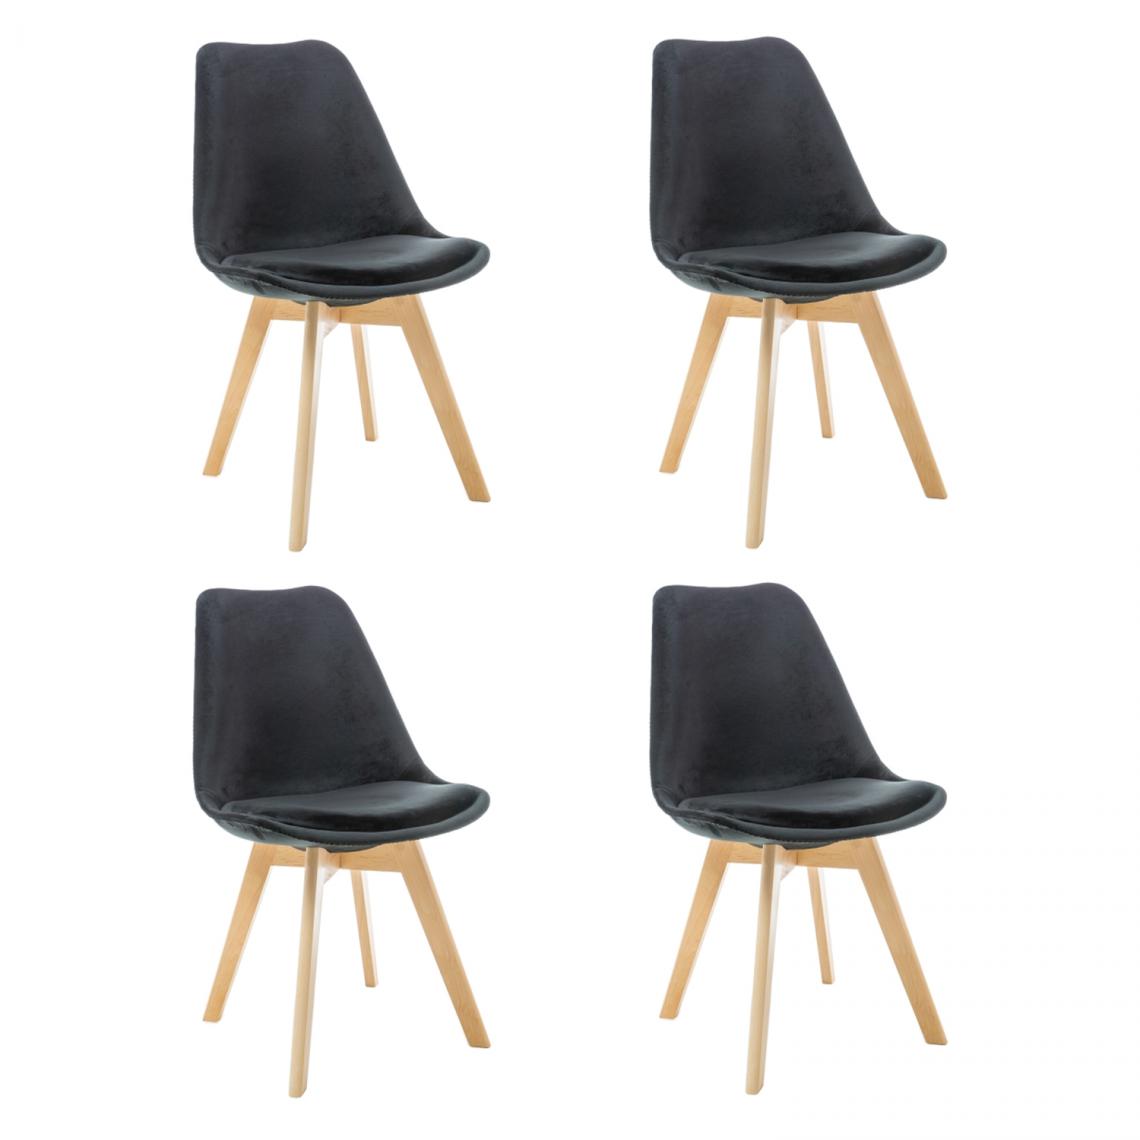 Hucoco - LEONIE - Lot de 4 chaises modernes avec pieds en bois - Dimensions : 86x52x48 cm - Style scandinave - Noir - Chaises